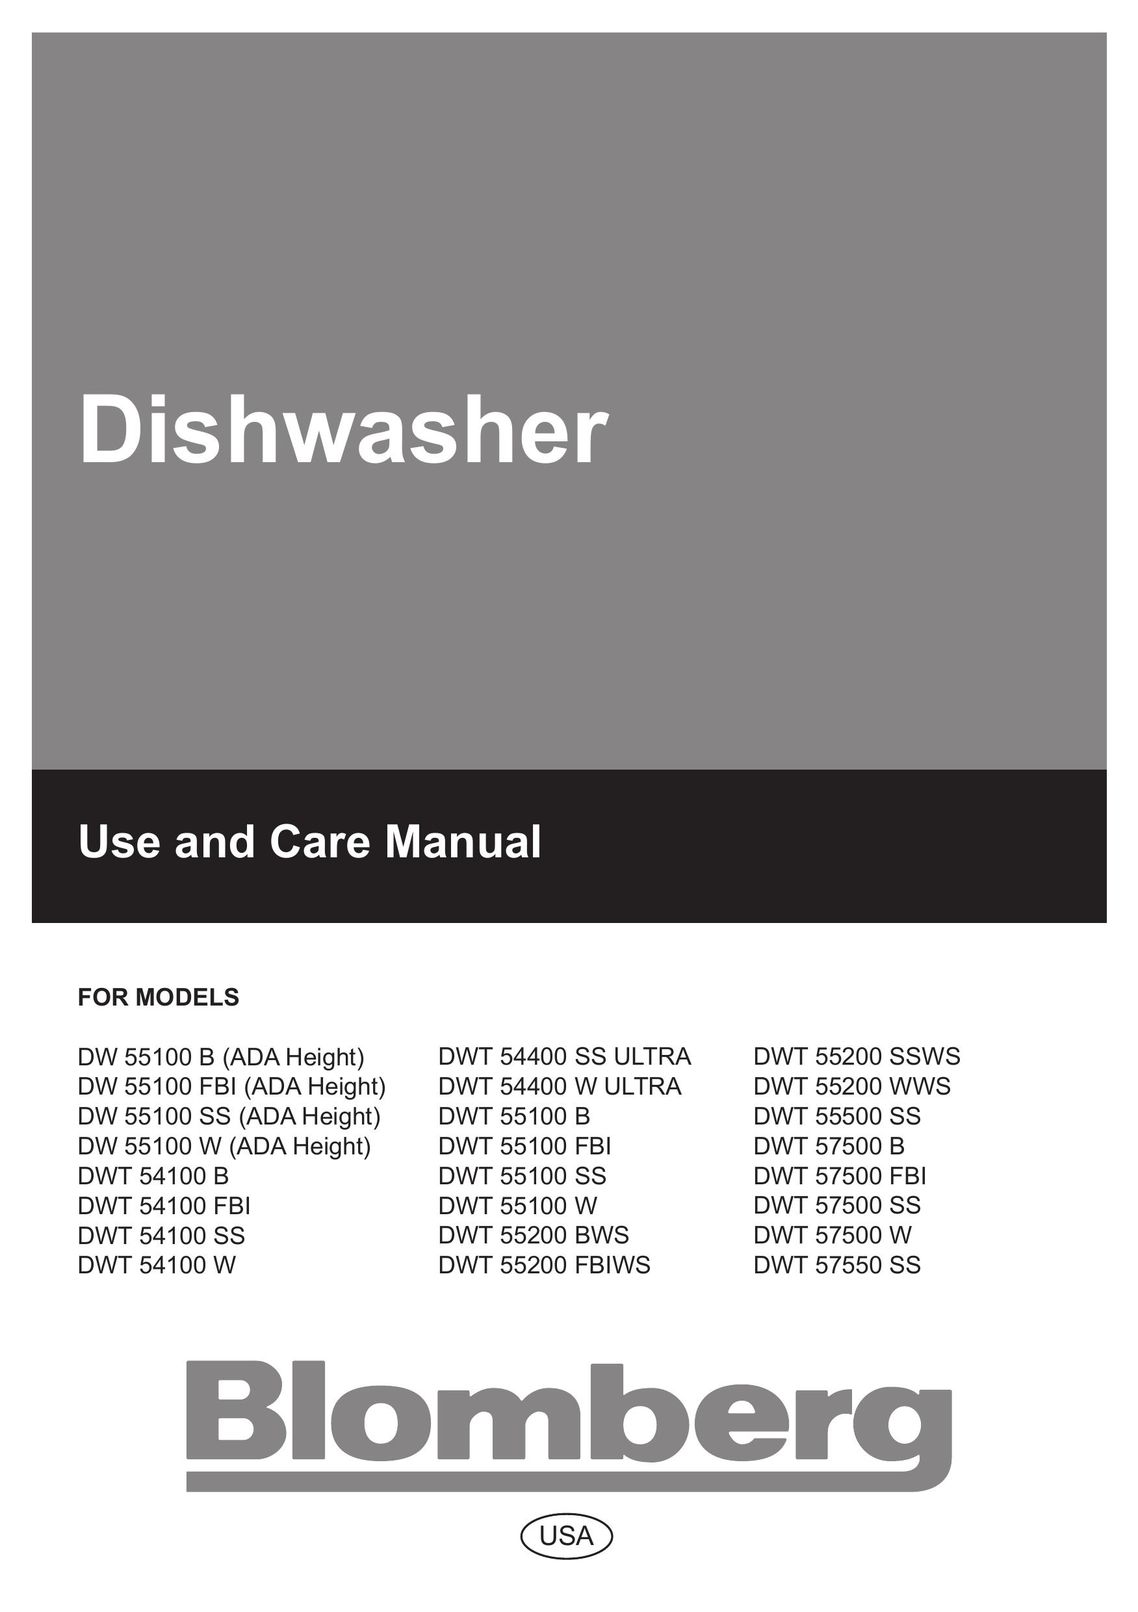 Blomberg DW 57500 B Dishwasher User Manual